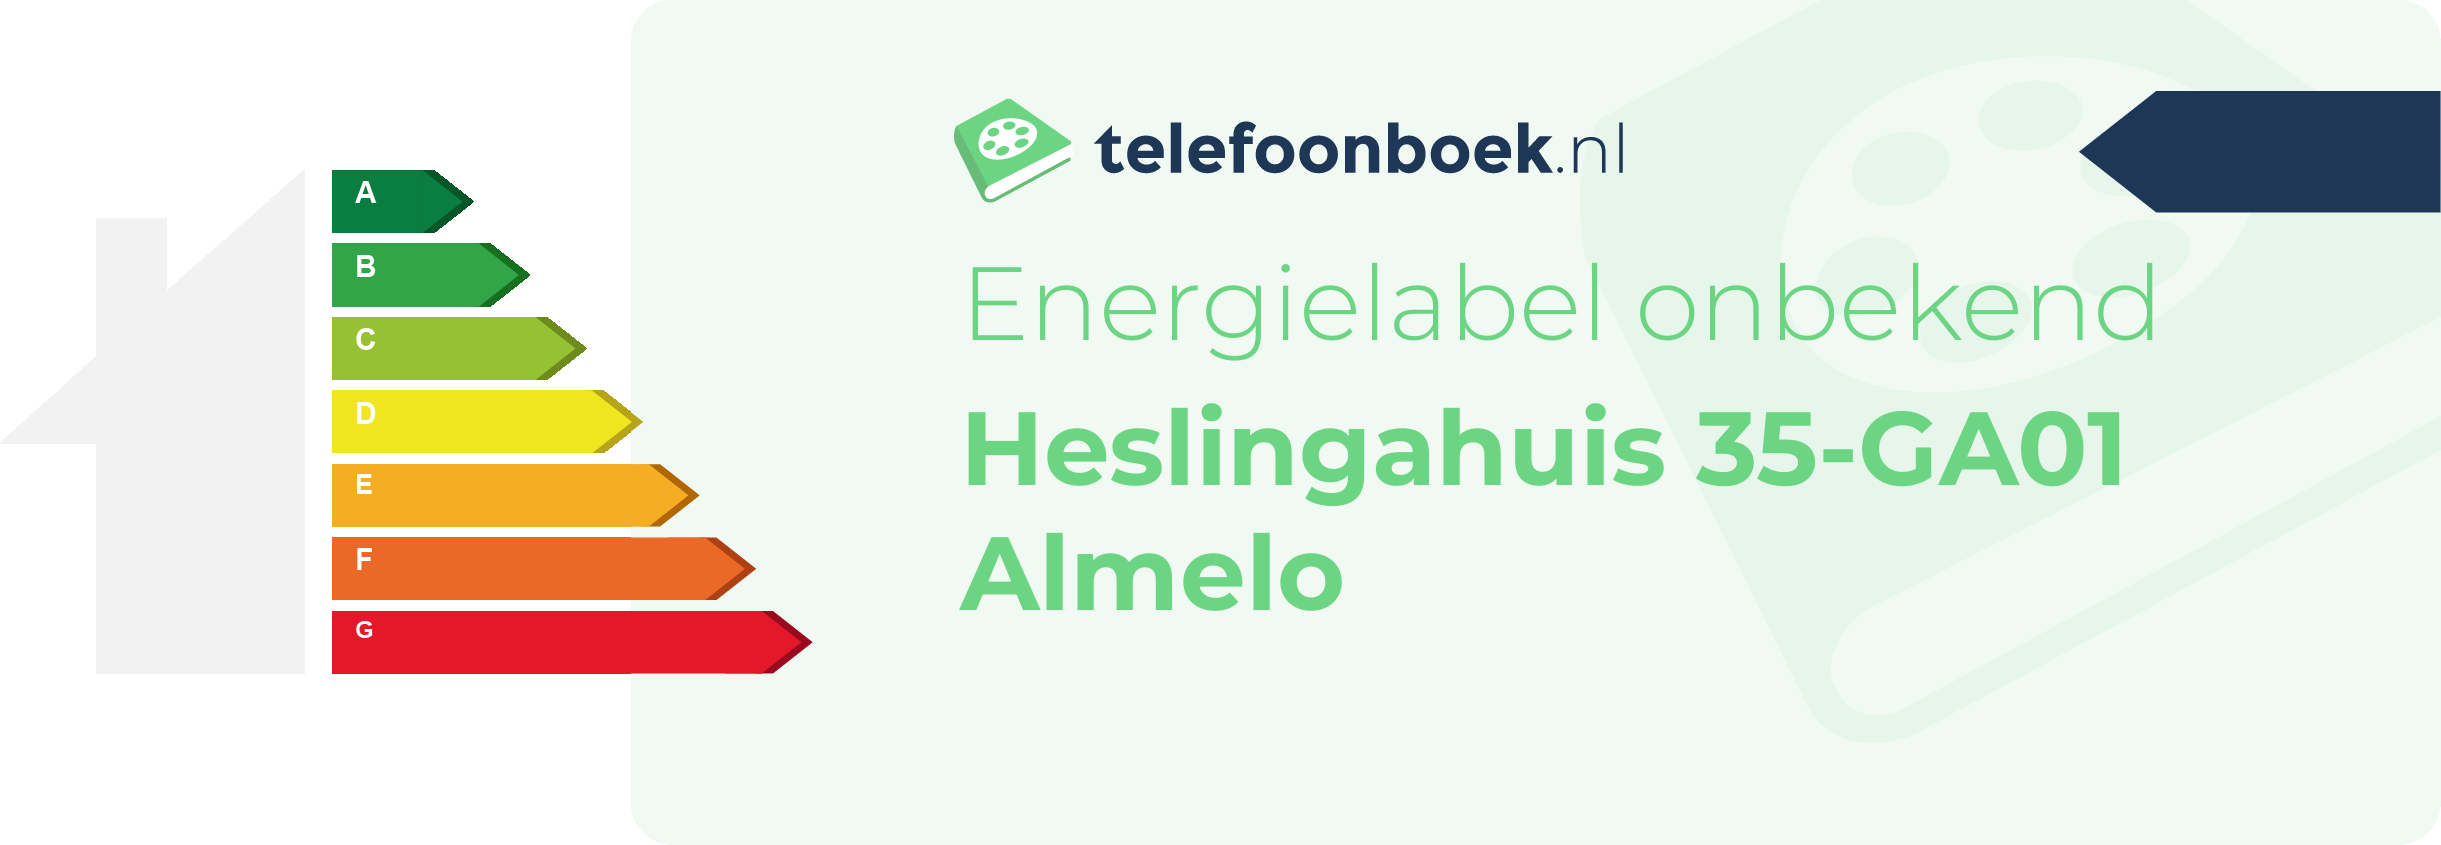 Energielabel Heslingahuis 35-GA01 Almelo